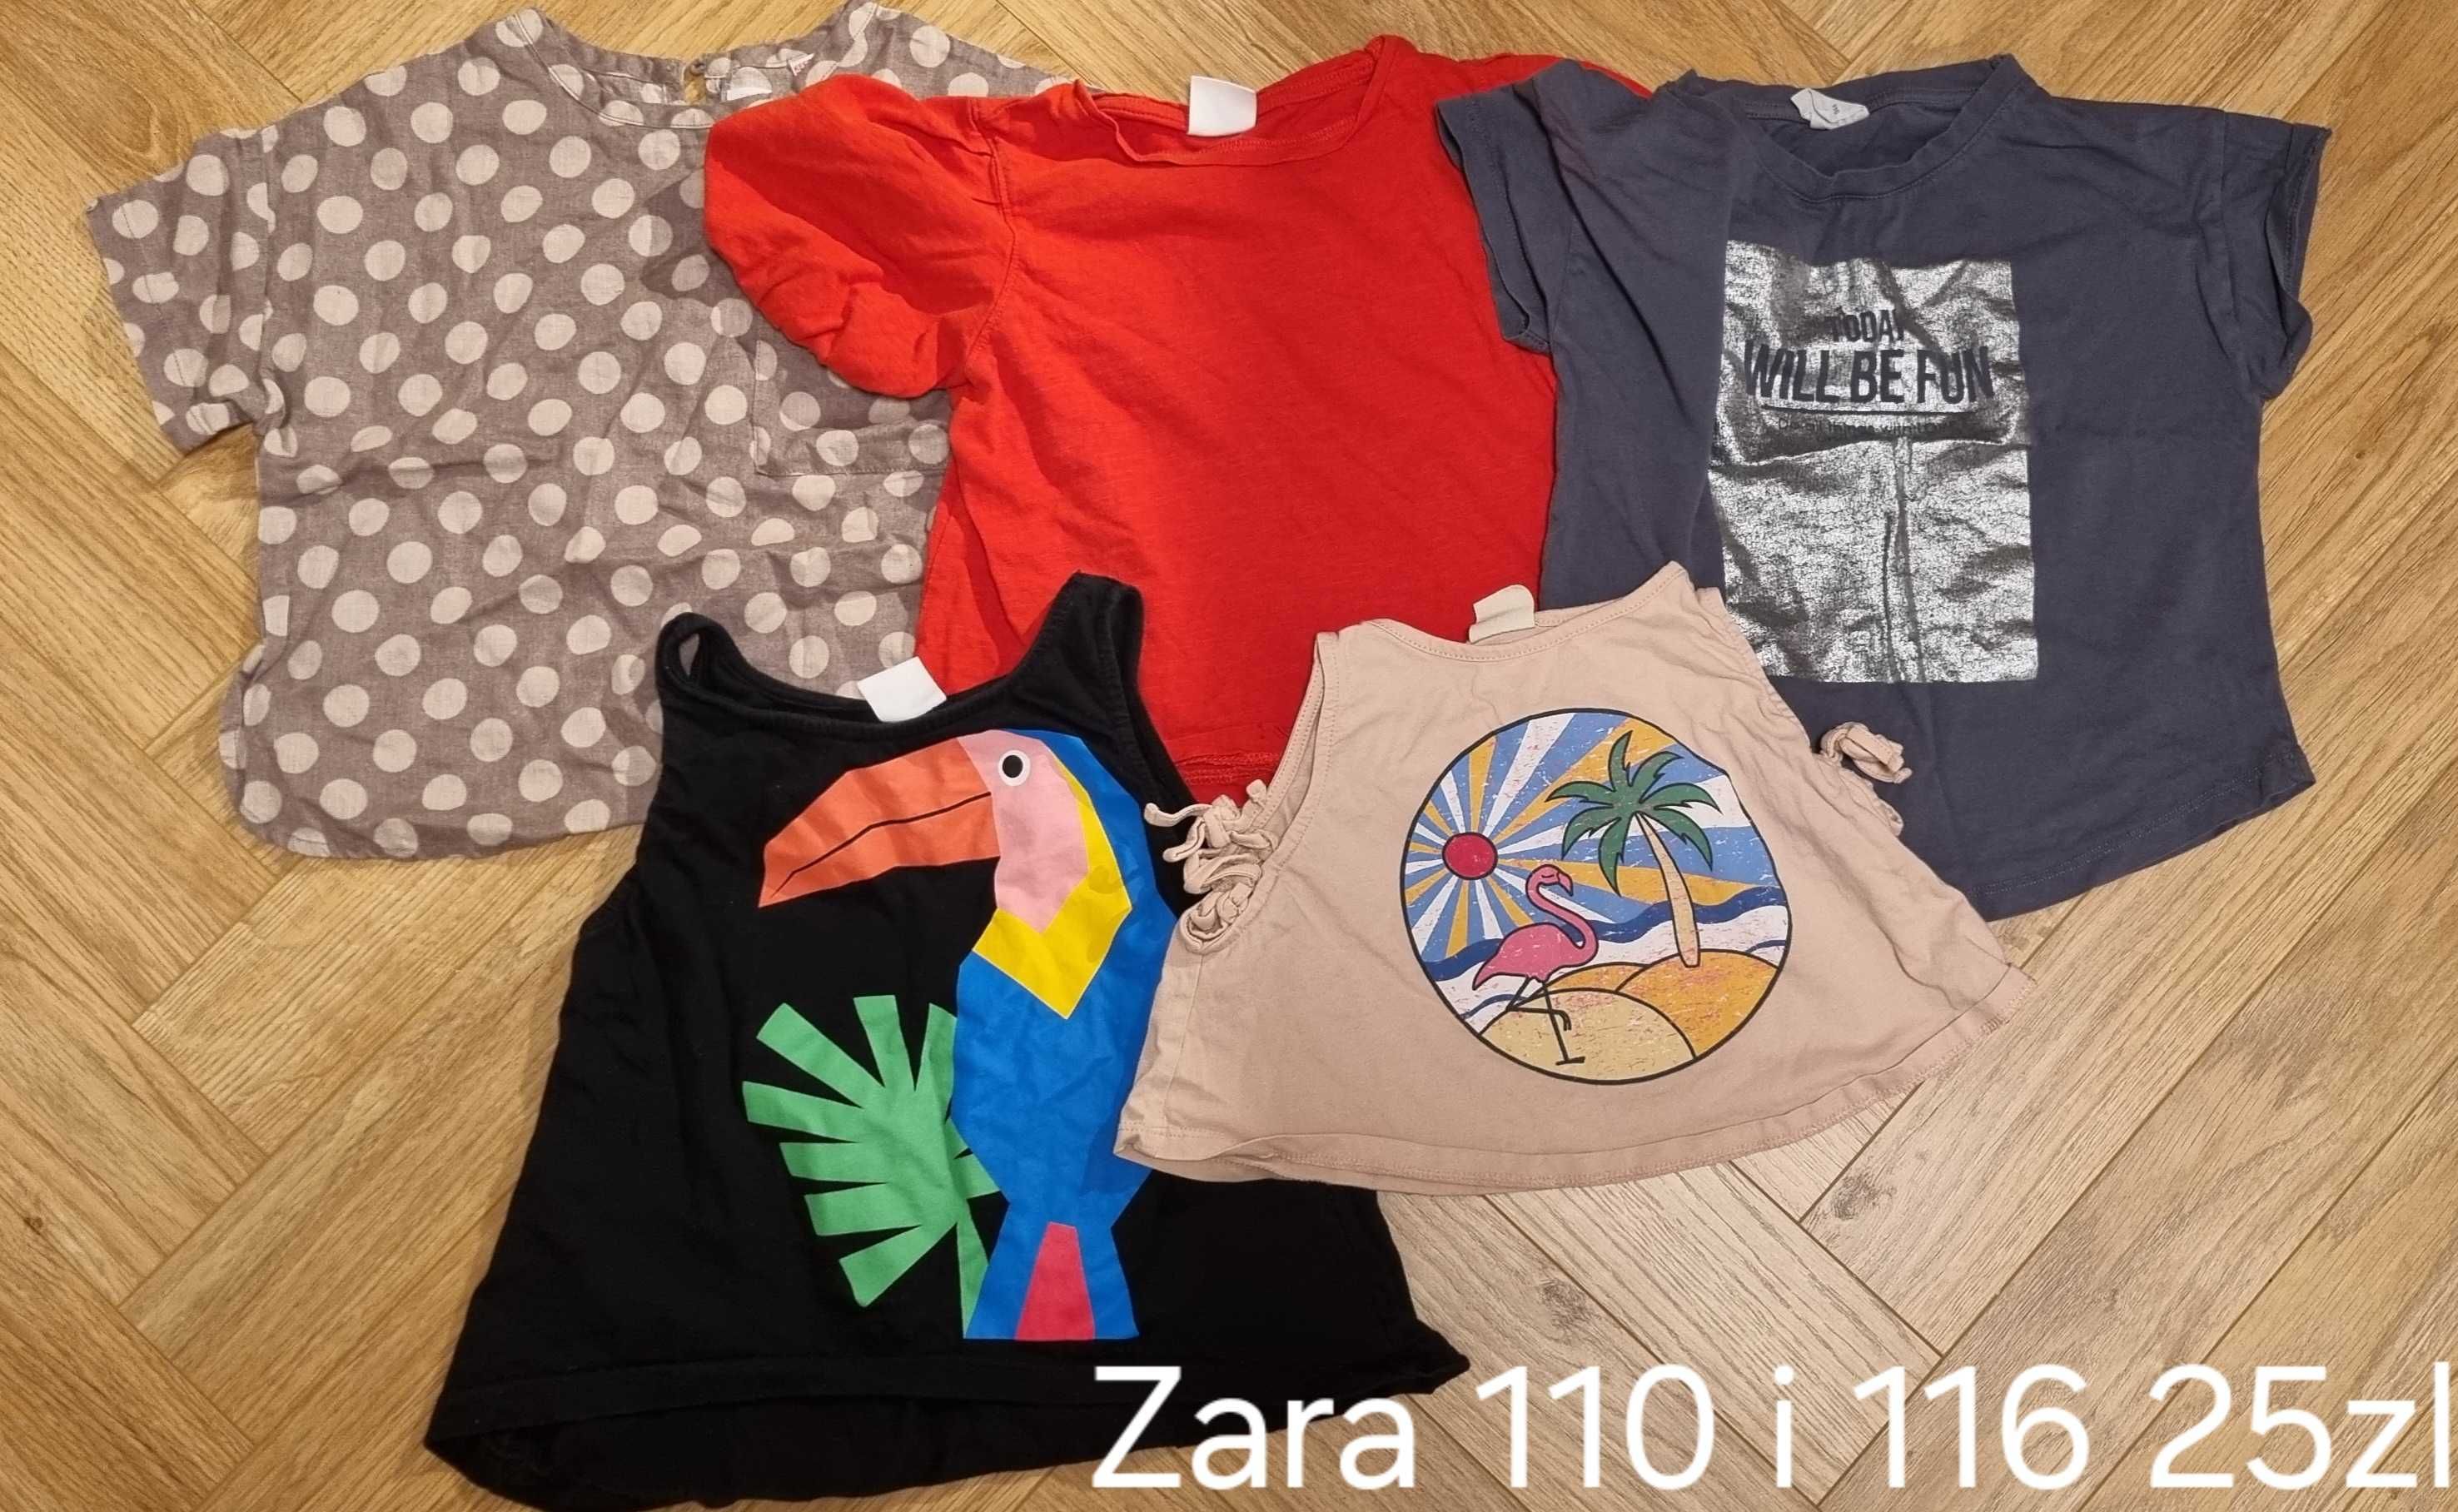 5x koszulki Zara 110 i 116